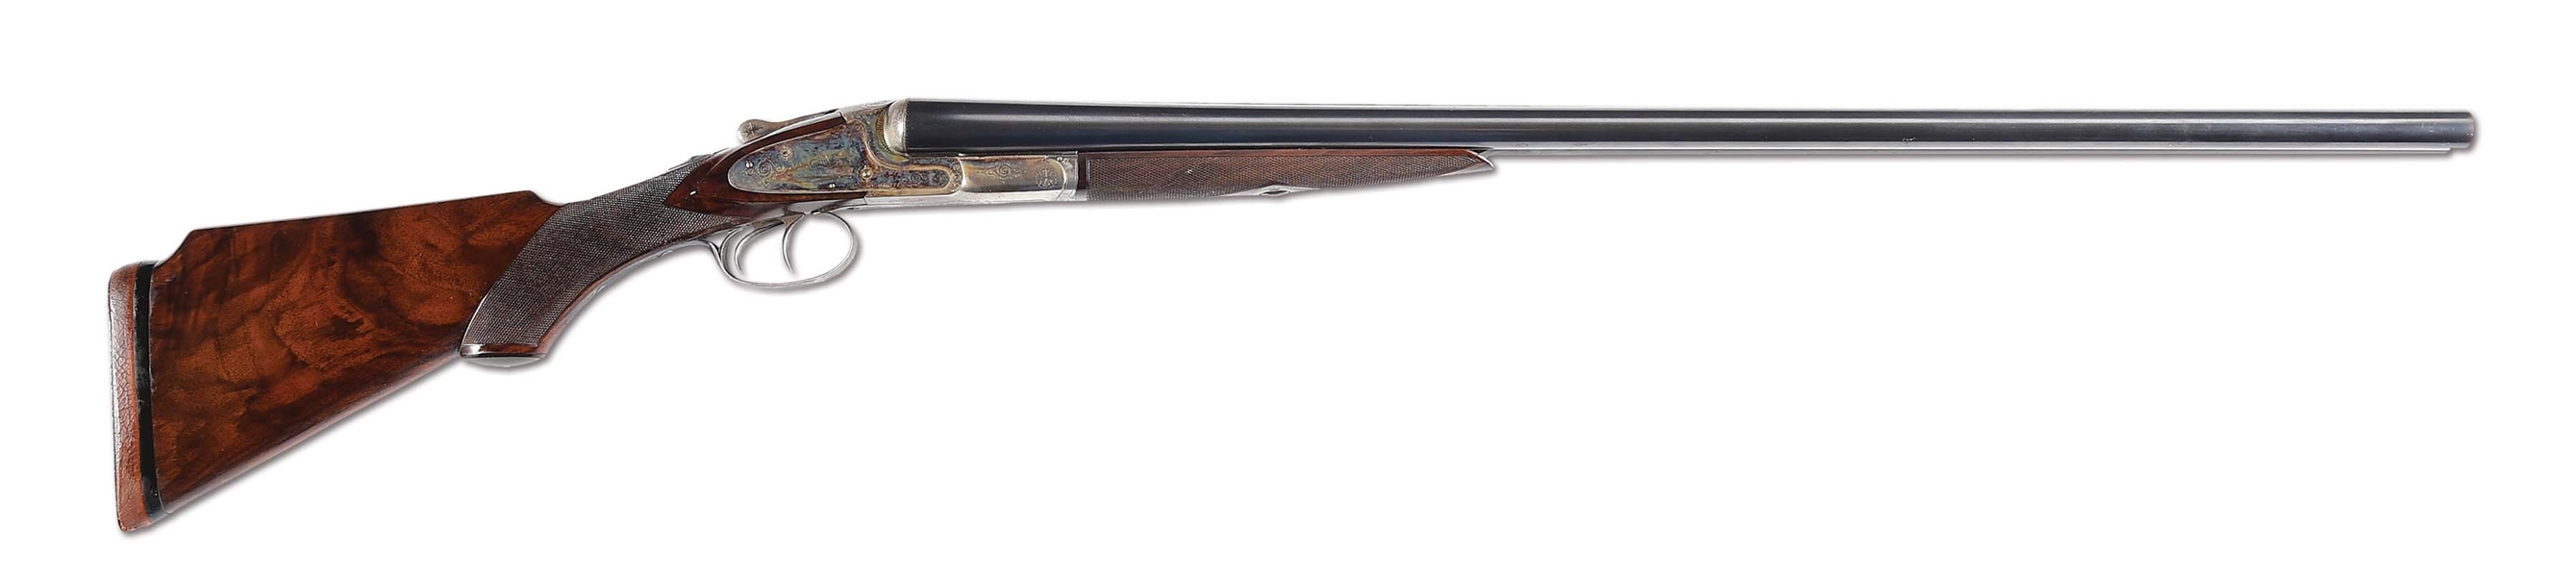 (C) L.C. SMITH PIGEON GUN SIDE BY SIDE SHOTGUN.